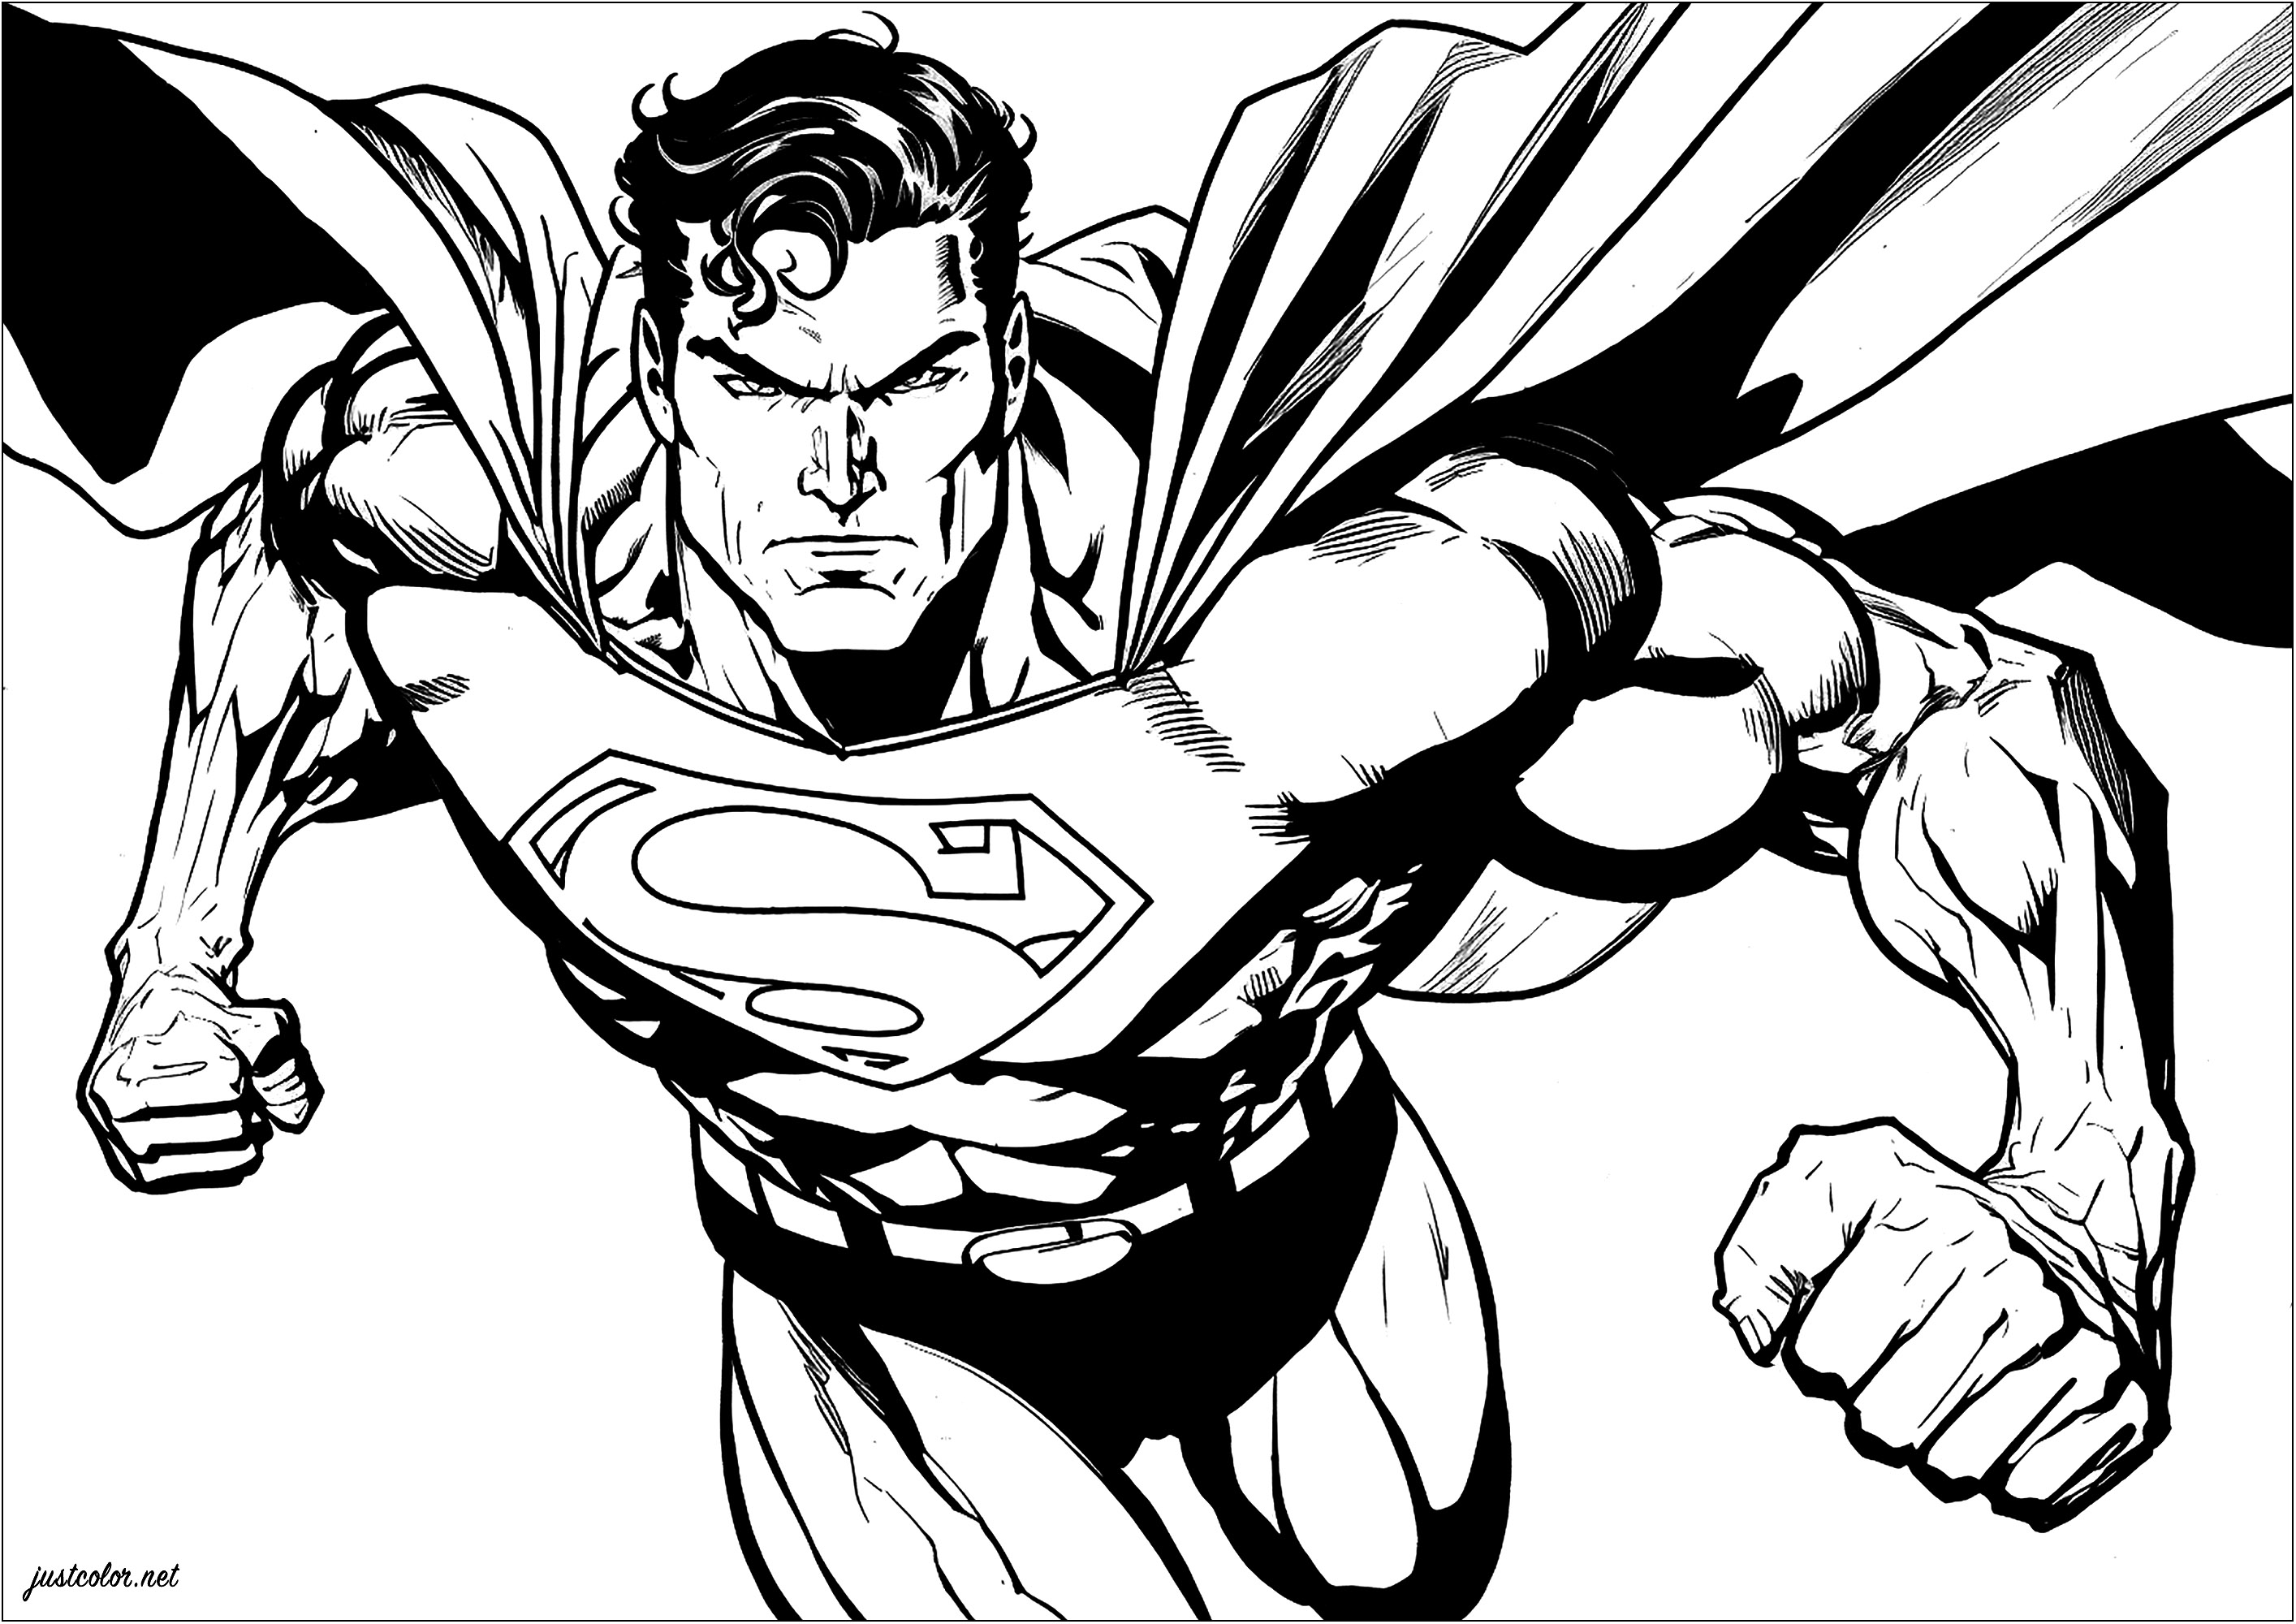 Superman y sus músculos abultados, listos para la batalla. Prepara tus rotuladores azul, rojo y amarillo.